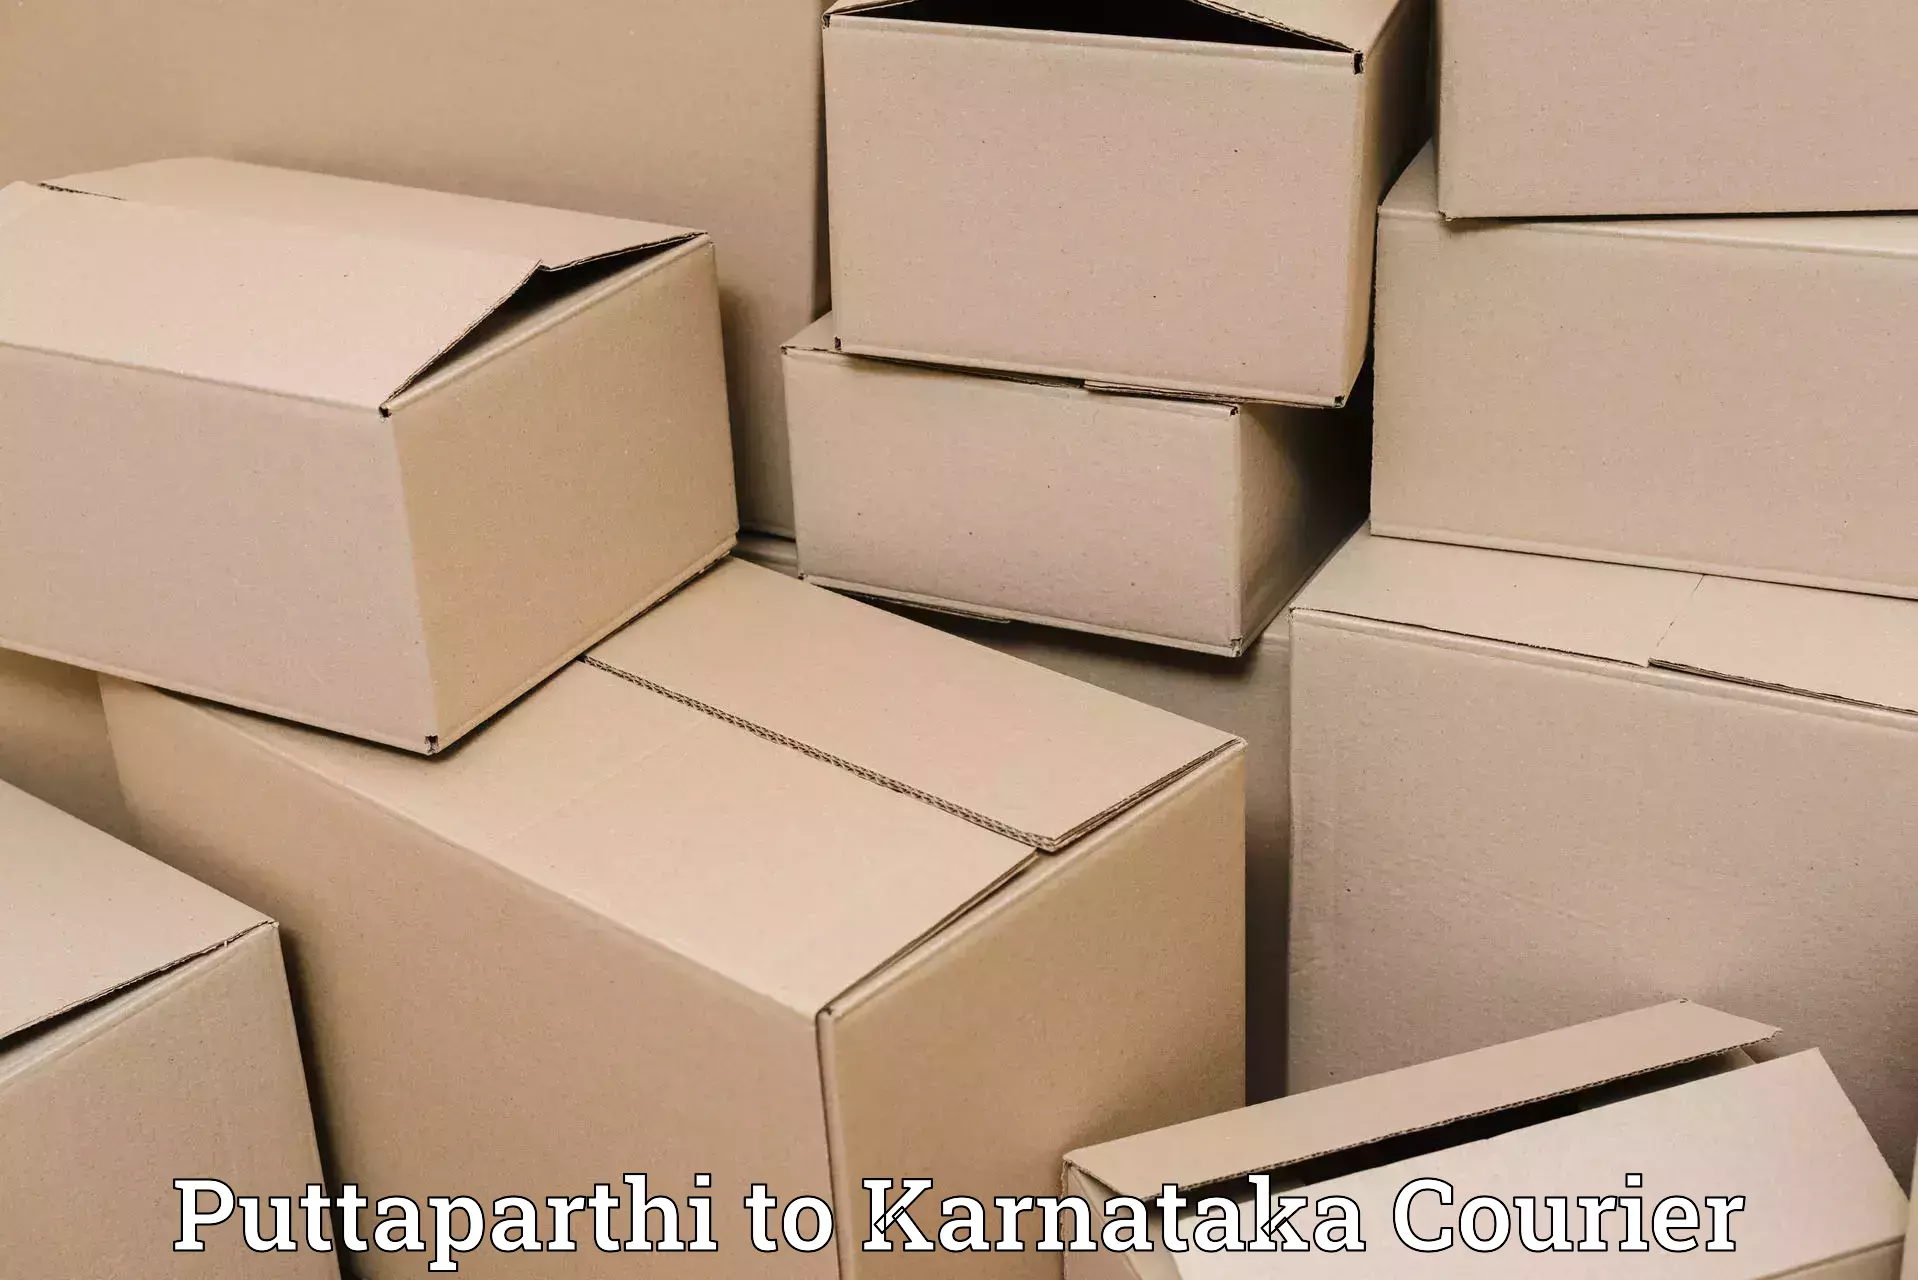 Luggage forwarding service Puttaparthi to Karnataka